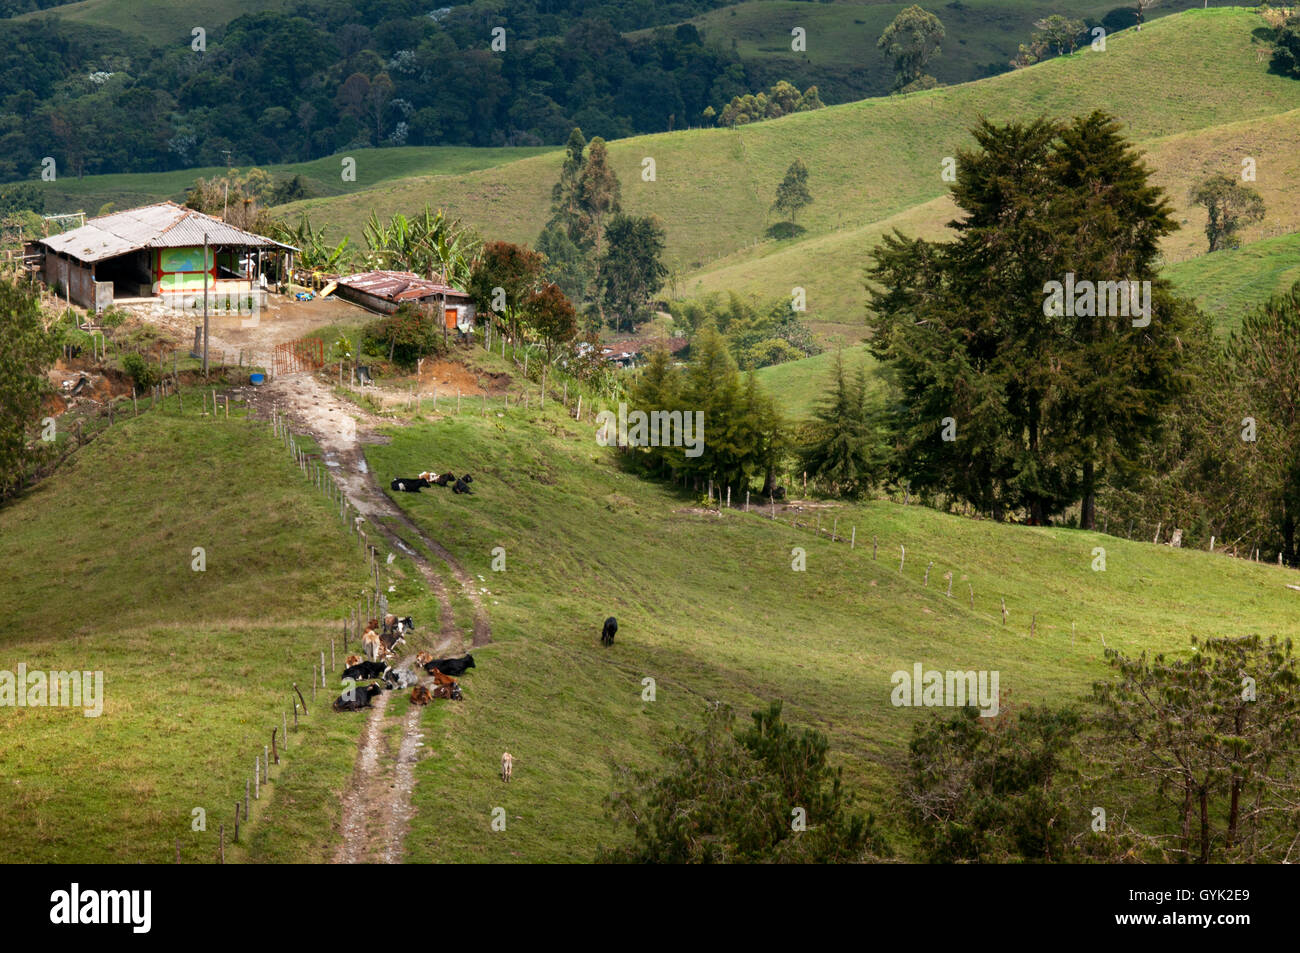 Blick auf das Dorf Filandia von Molina Lookout, Kolumbien. Finlandia, ist eine politische Gemeinde des Kaffee-Dreiecks. Colombi Stockfoto